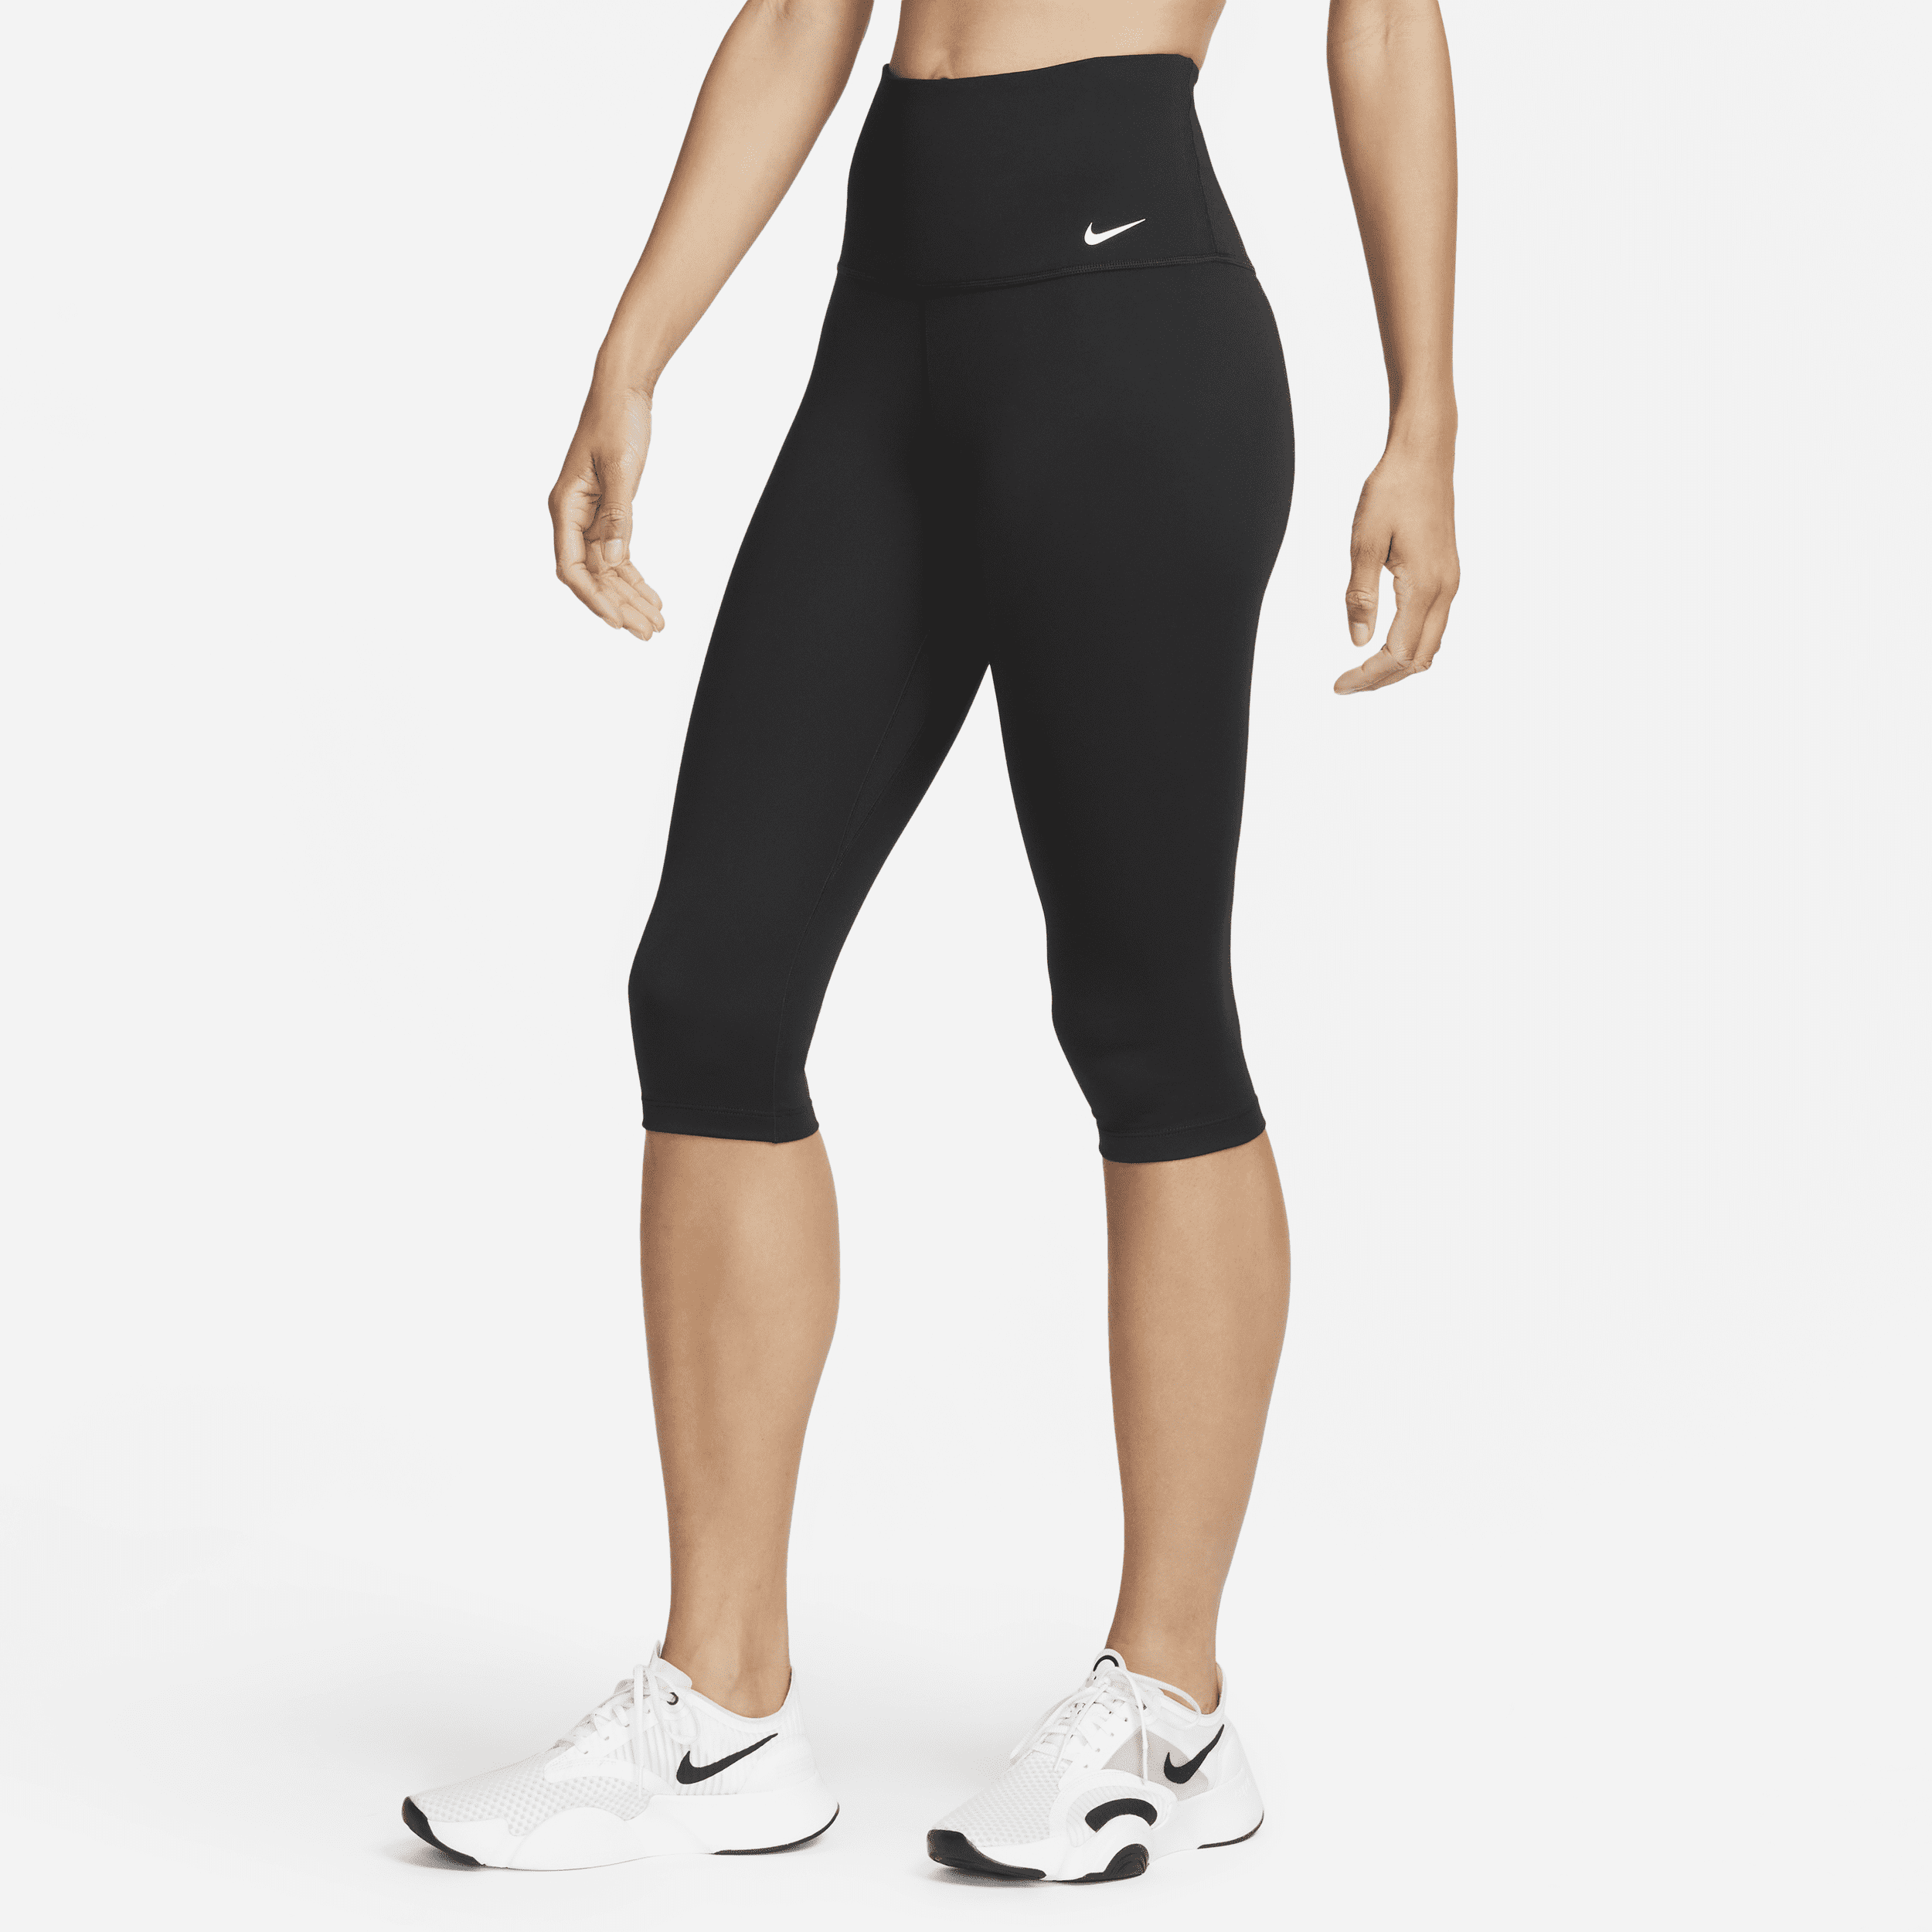 Nike One Leggings pirata de talle alto - Mujer - Negro